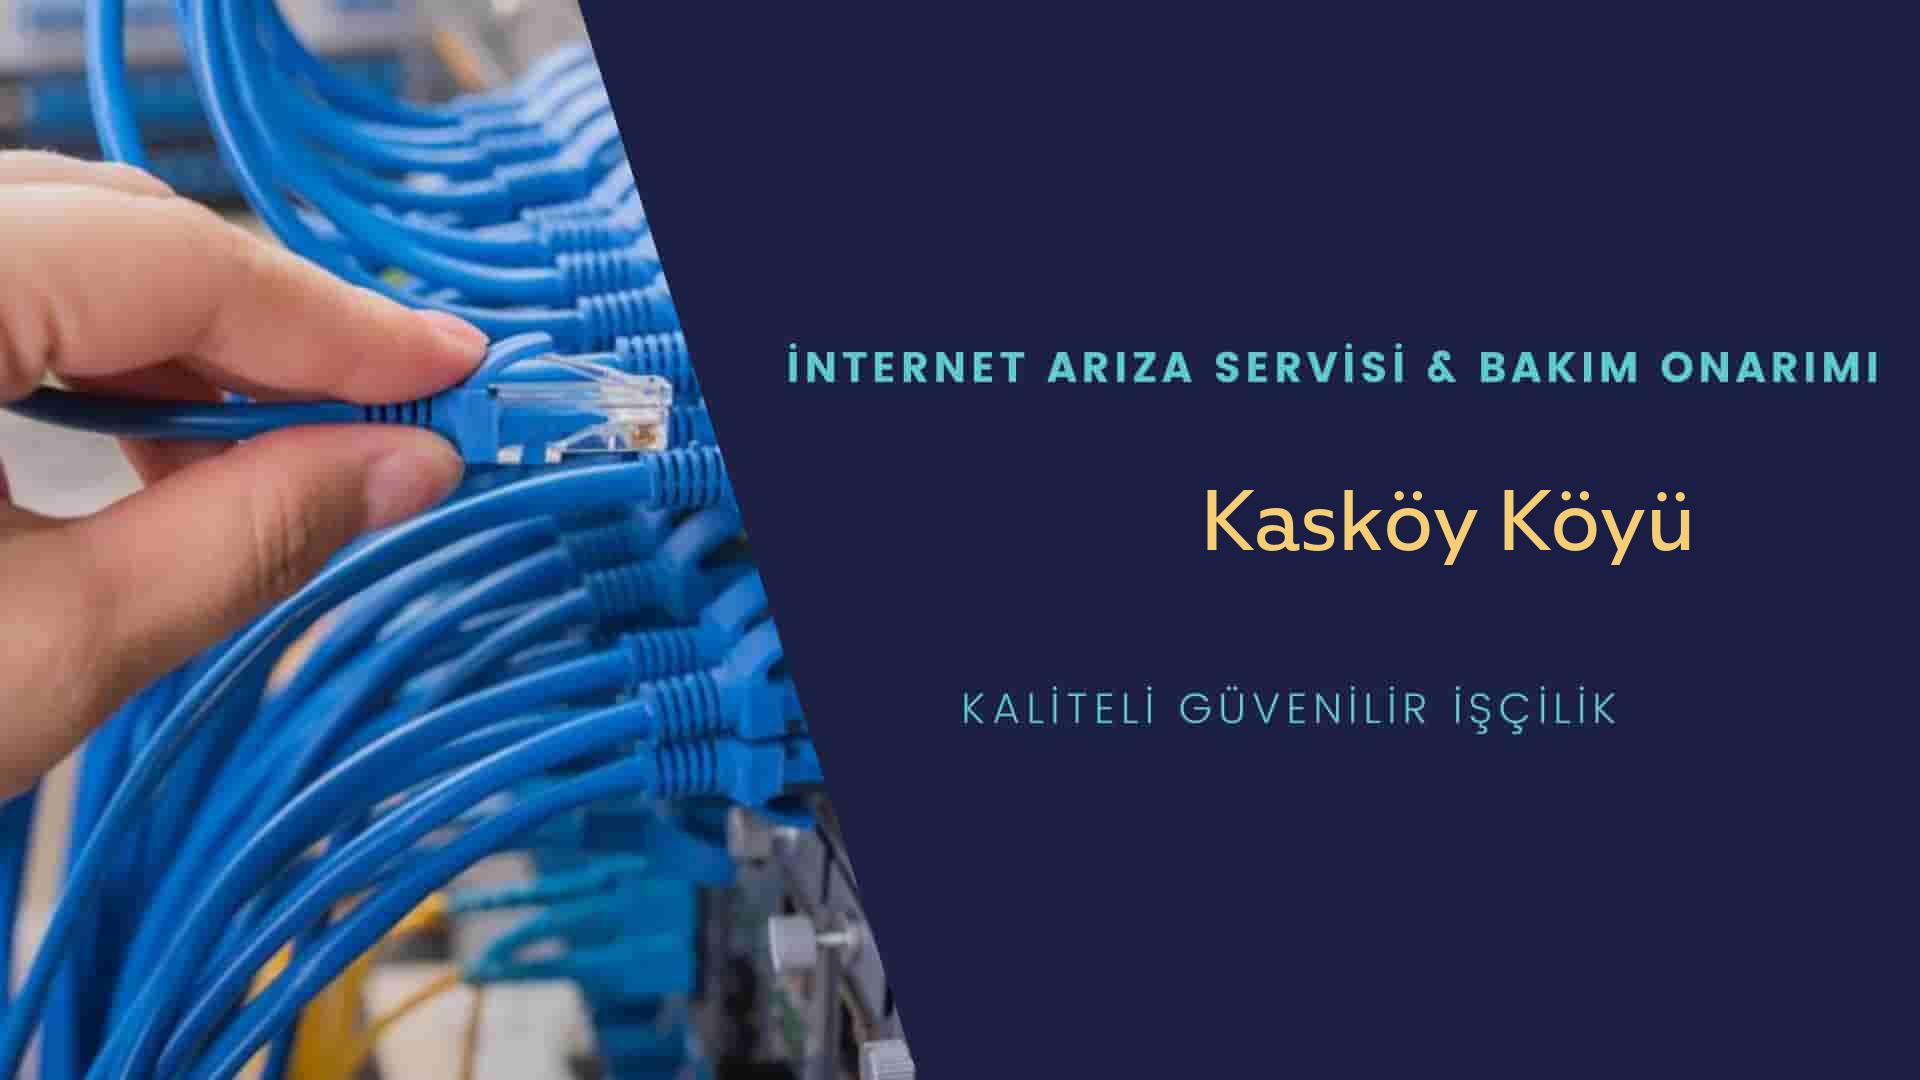 Kaşköy Köyü internet kablosu çekimi yapan yerler veya elektrikçiler mi? arıyorsunuz doğru yerdesiniz o zaman sizlere 7/24 yardımcı olacak profesyonel ustalarımız bir telefon kadar yakındır size.